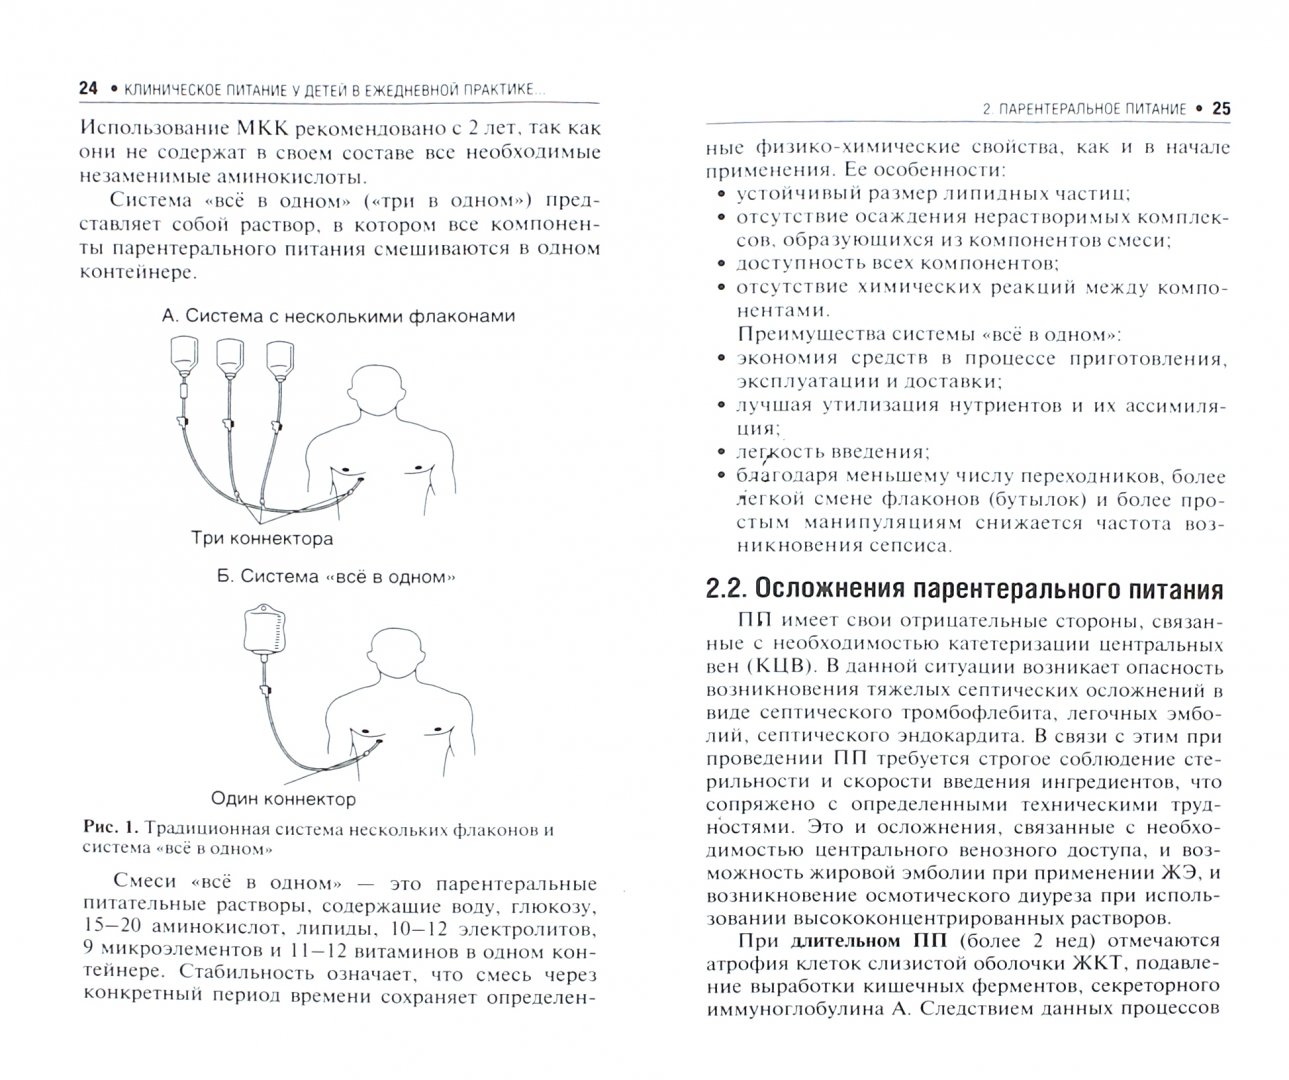 Иллюстрация 1 из 4 для Клиническое питание у детей в ежедневной практике хирурга - Юлия Ерпулева | Лабиринт - книги. Источник: Лабиринт